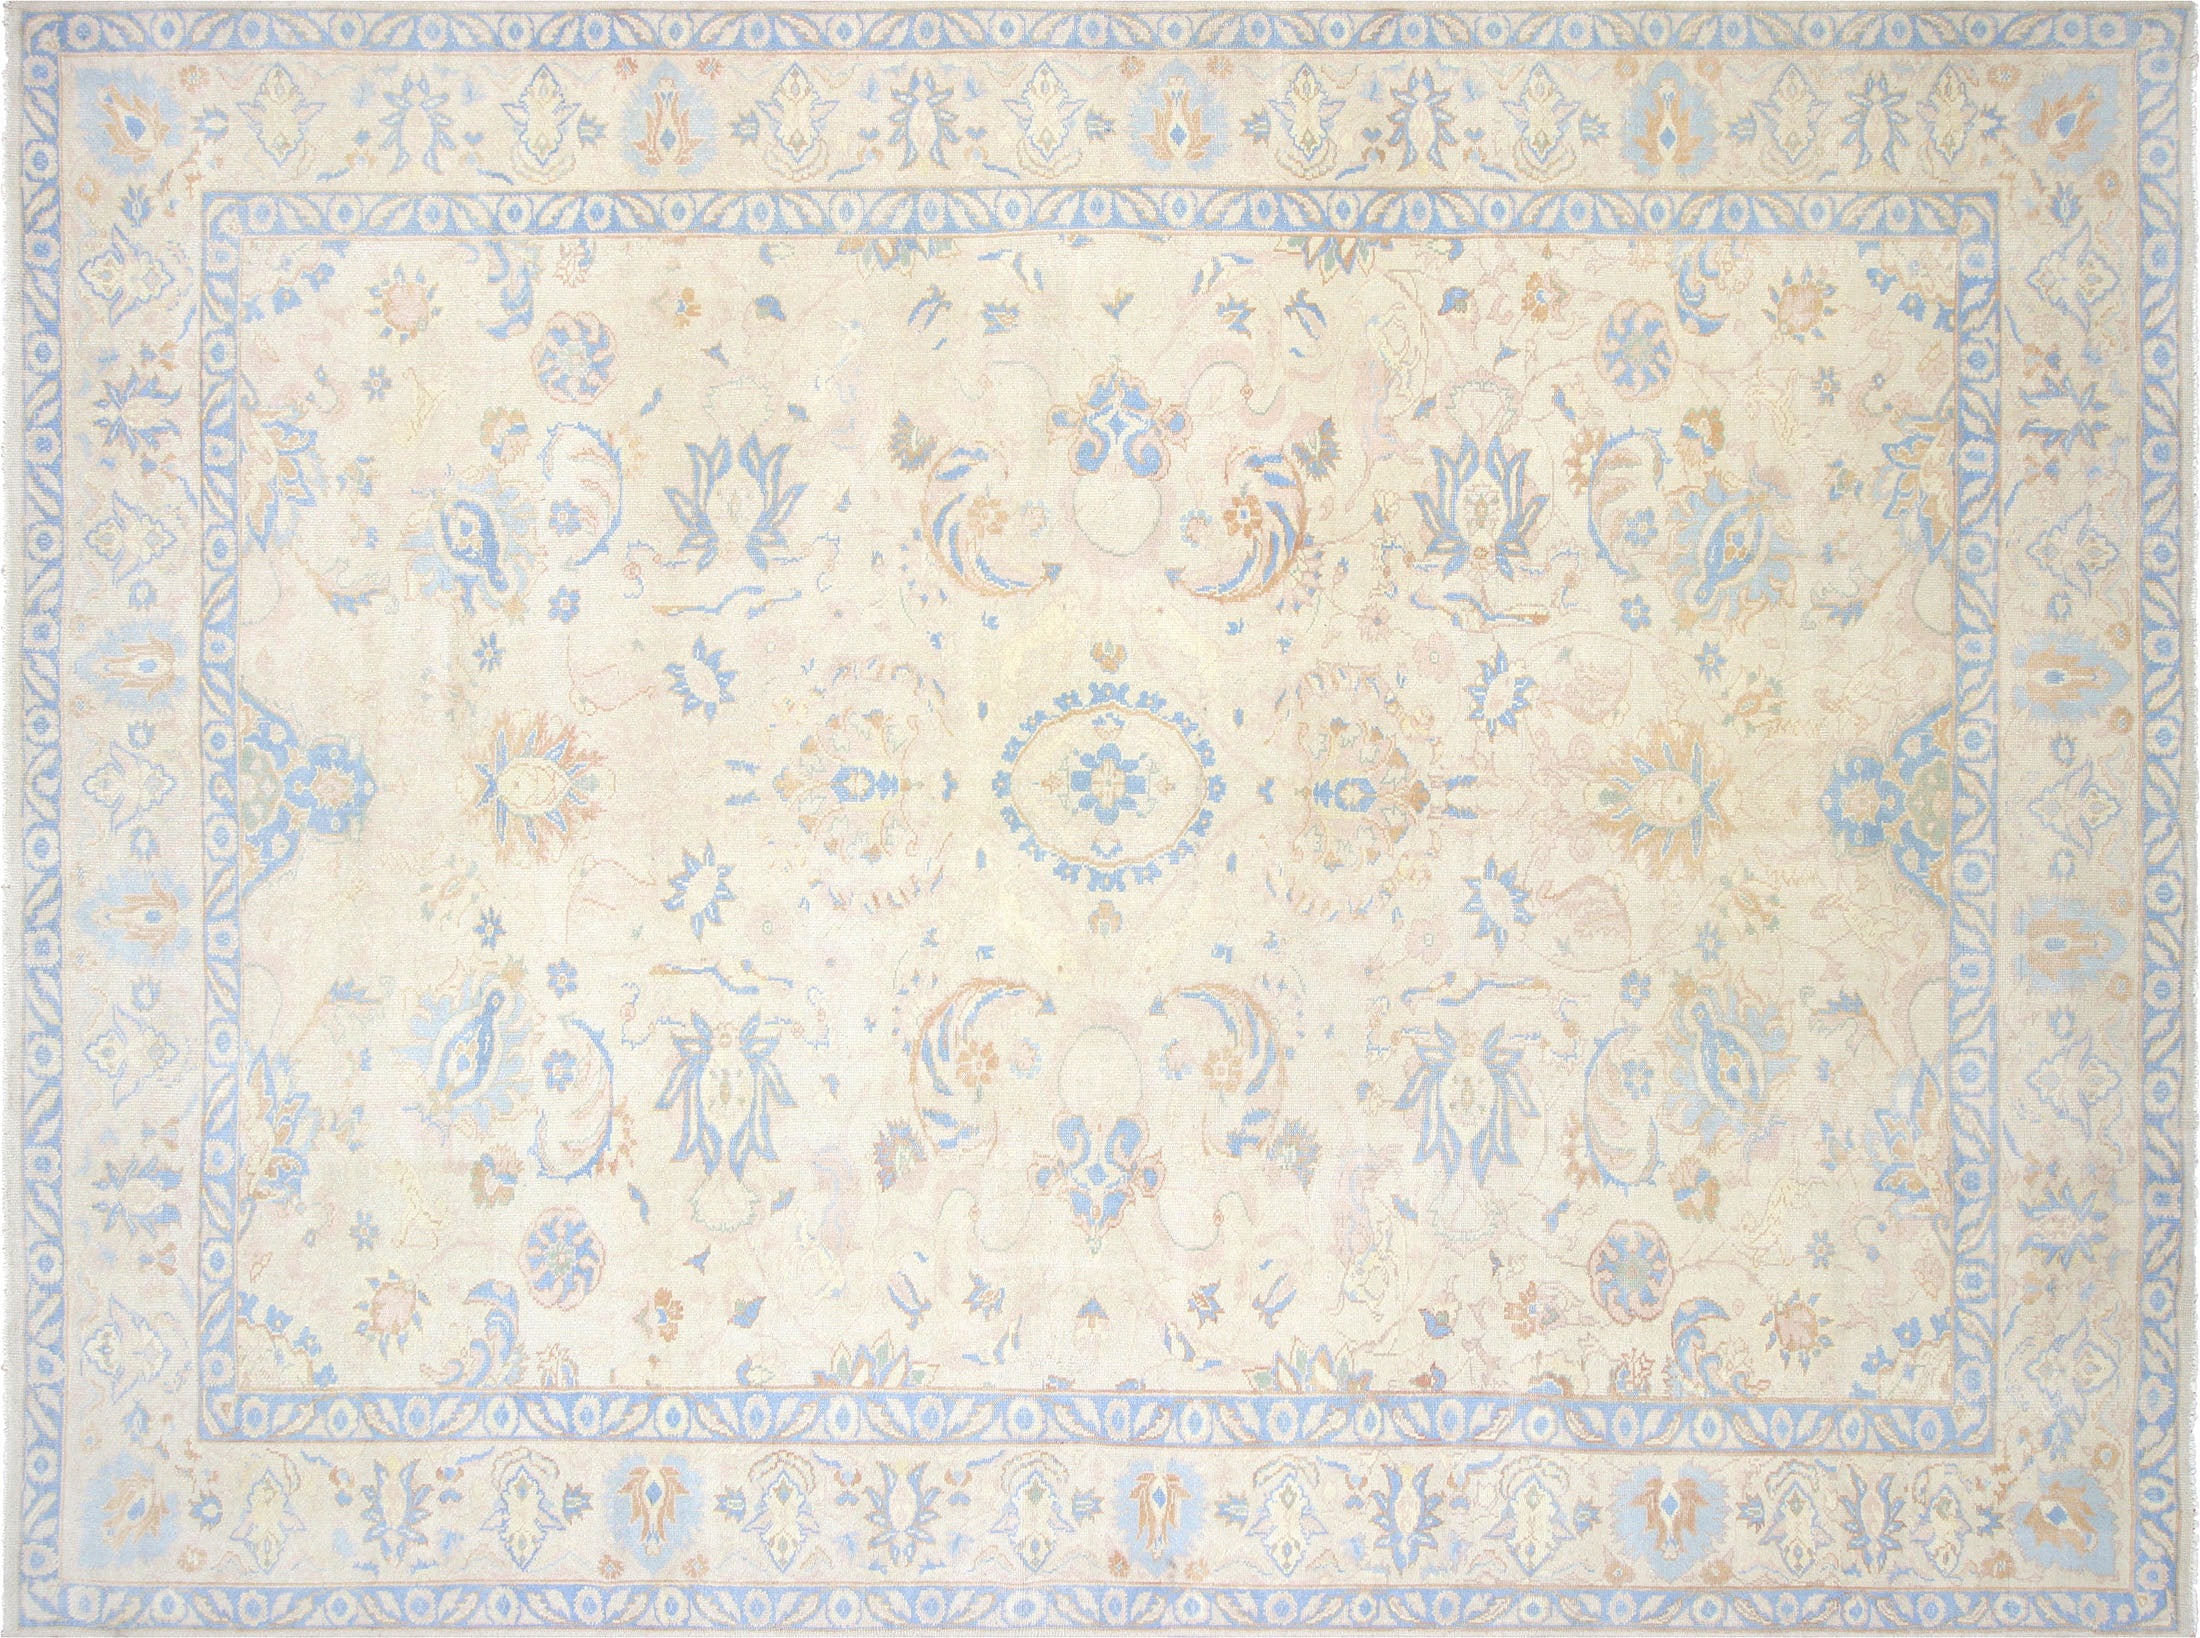 Vintage Turkish Oushak Carpet - 11'7" x 15'6"